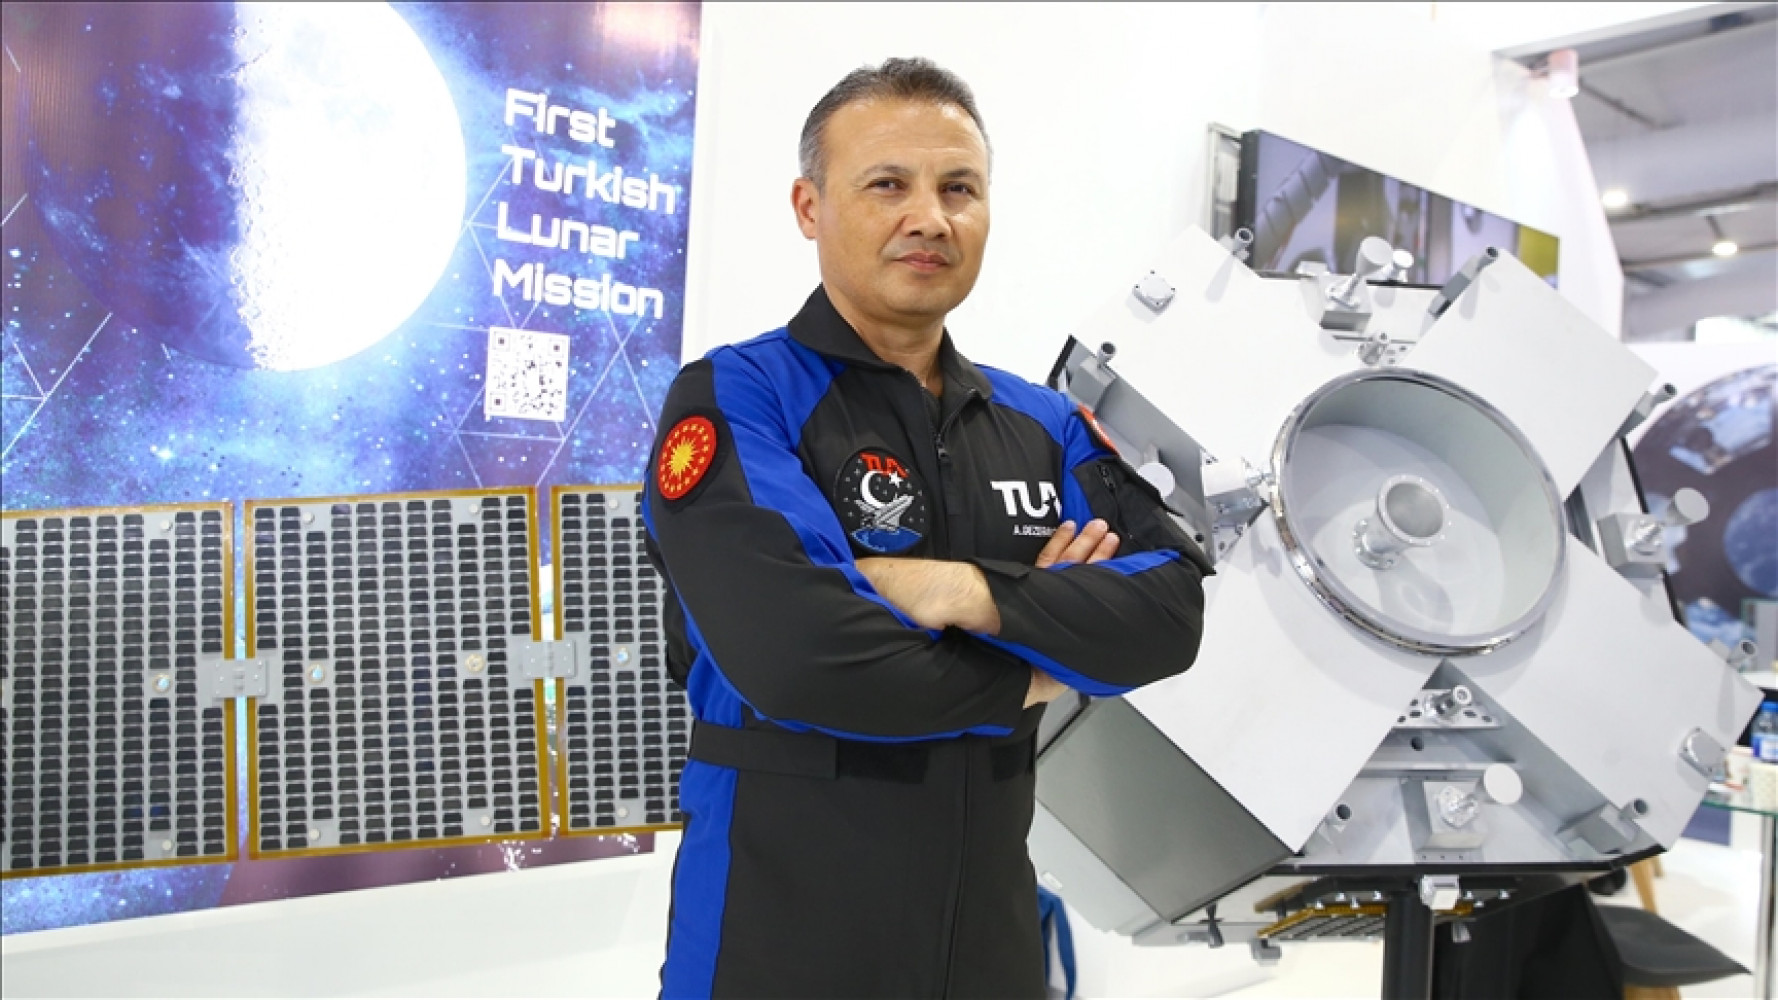 İlk Türk astronot Alper Gezeravcı’nın uzay yolculuğu başladı